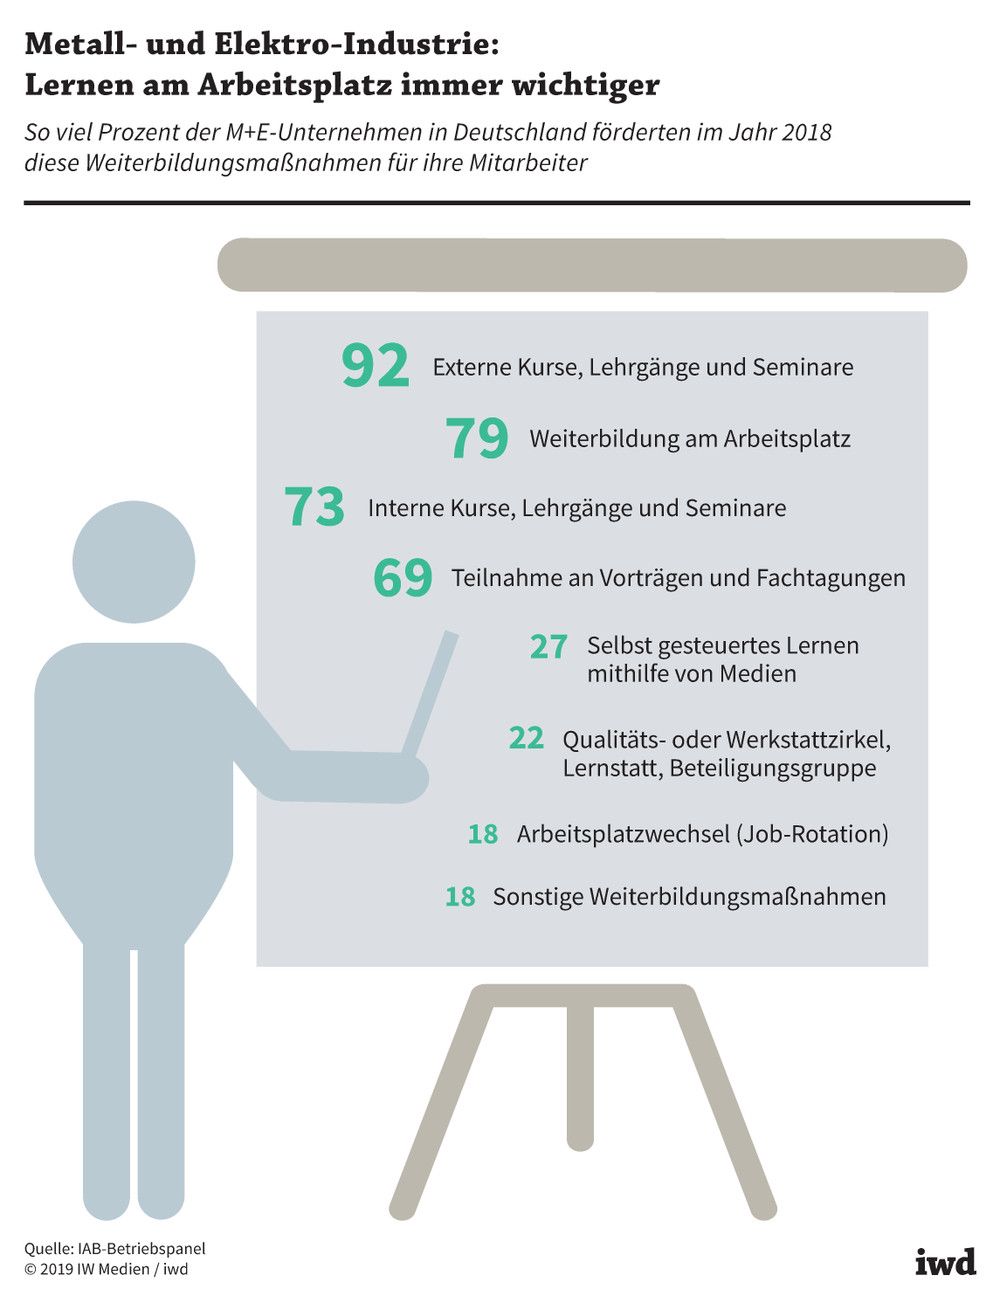 So viel Prozent der M+E-Unternehmen in Deutschland förderten im Jahr 2018 diese Weiterbildungsmaßnahmen für ihre Mitarbeiter